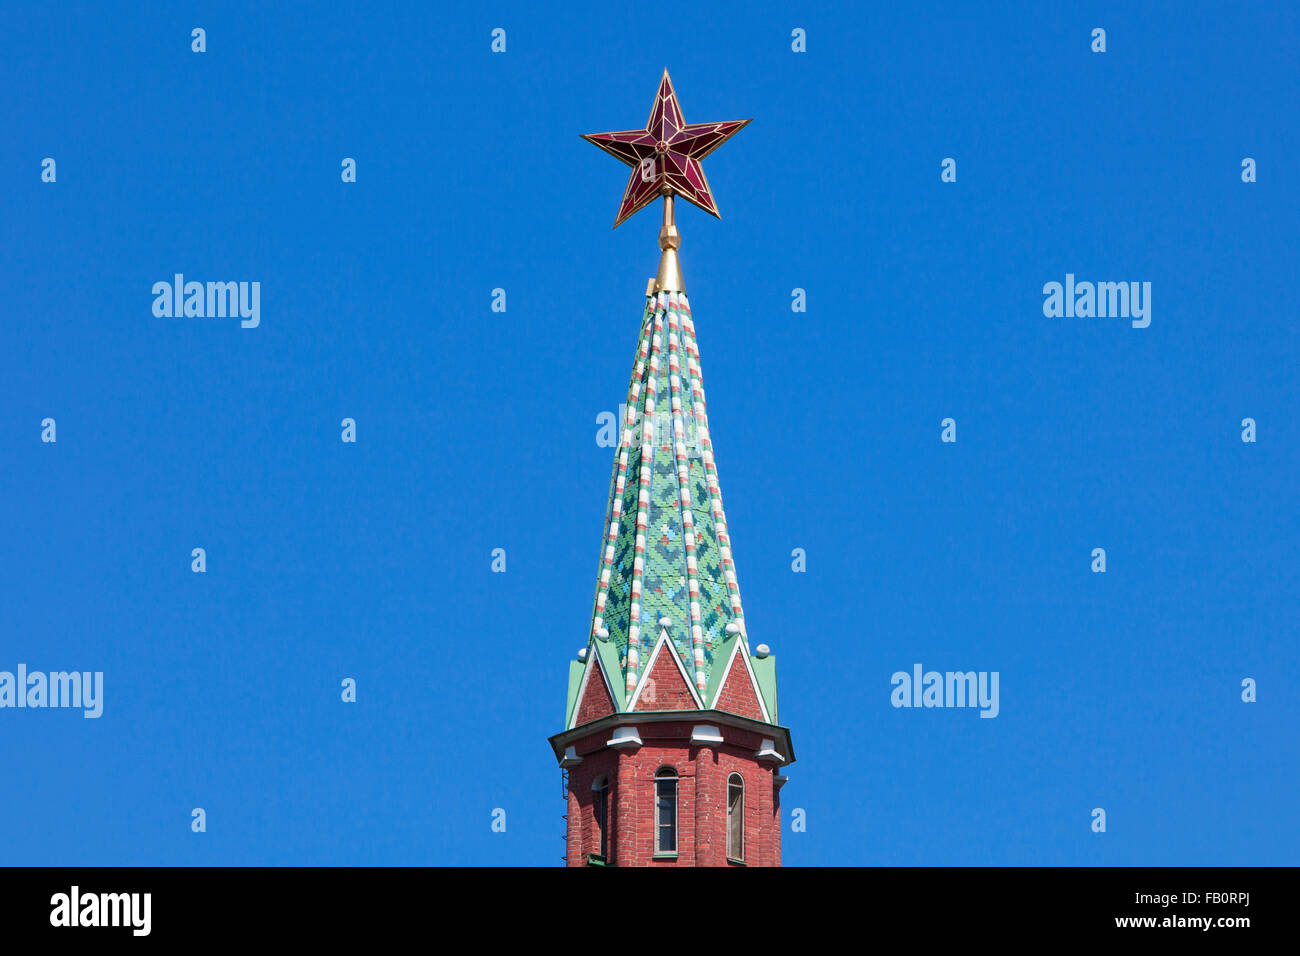 Détail de l'étoile rouge sur le dessus de l'eau approvisionnant Tower ou Vodovzvodnaya Tower (1488) du Kremlin à Moscou, Russie Banque D'Images